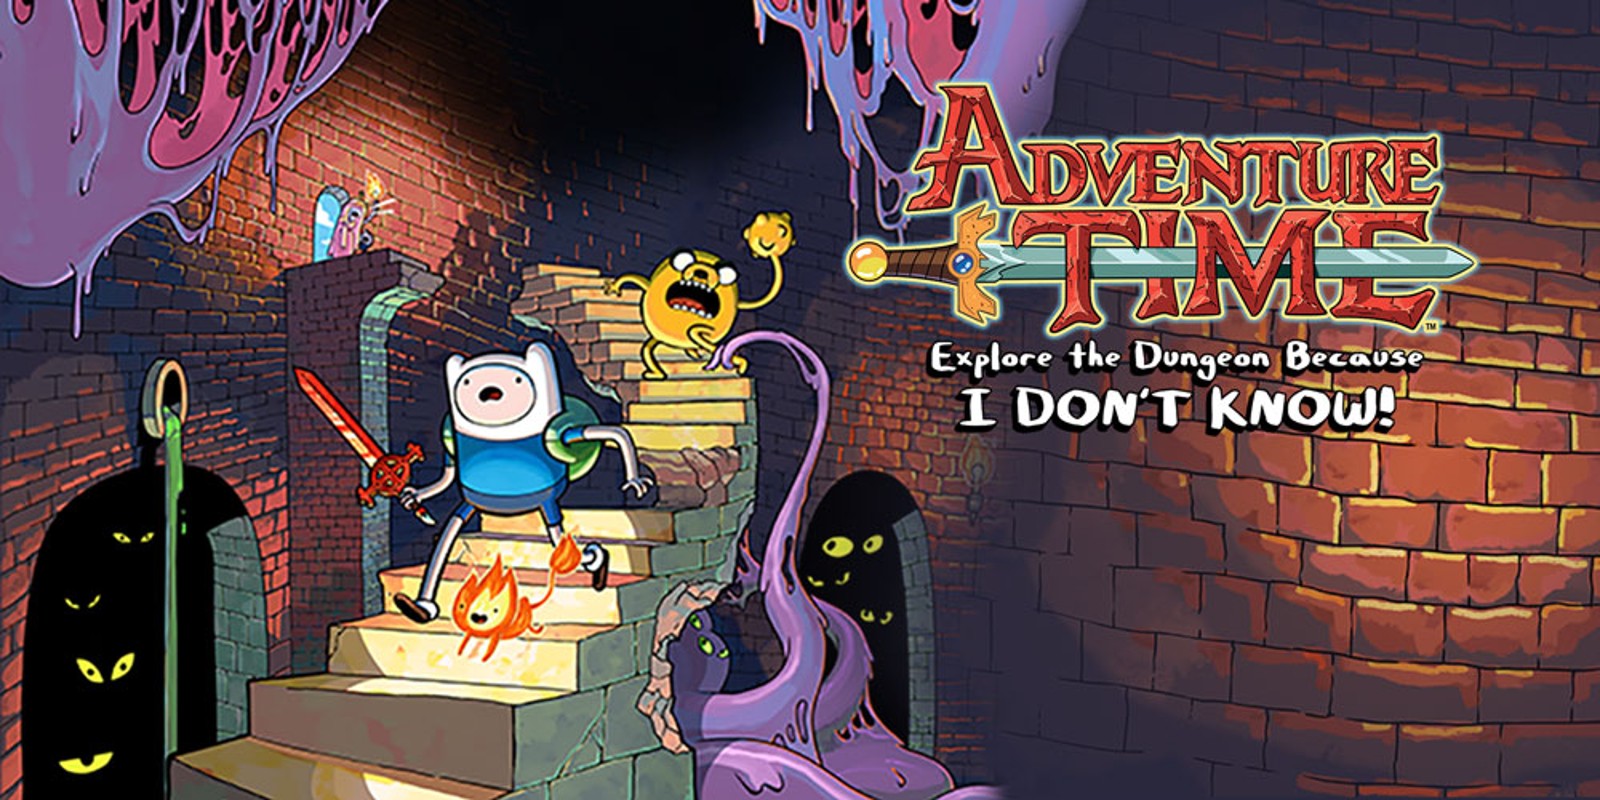 ontsnapping uit de gevangenis Door In werkelijkheid Adventure Time™: Explore the Dungeon Because I DON'T KNOW! | Wii U games |  Games | Nintendo